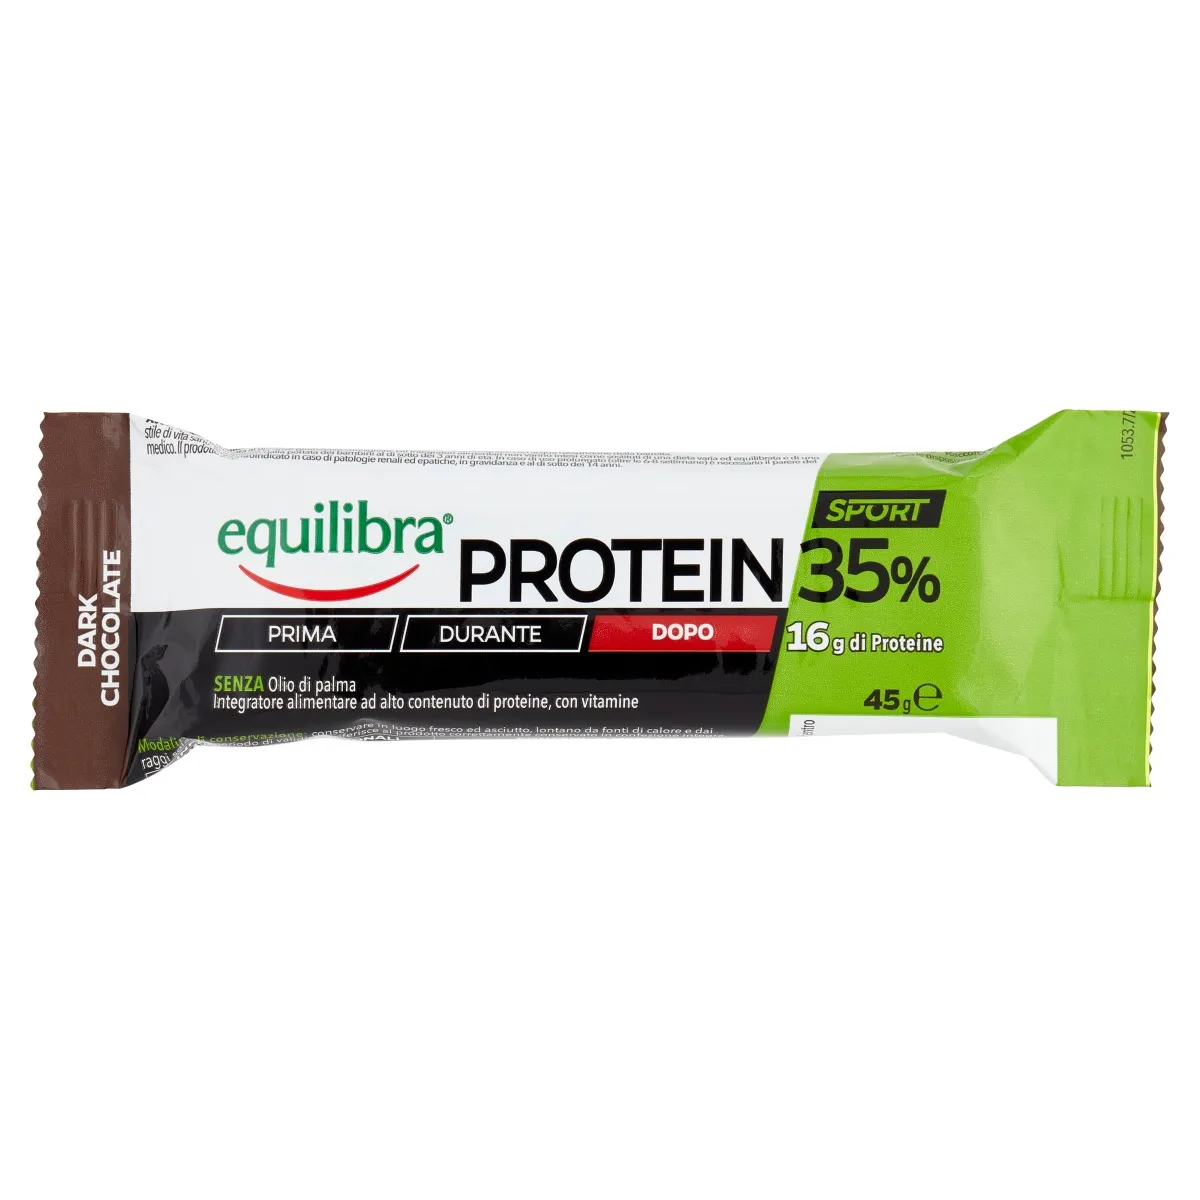 Equilibra Protein 35% Barretta Dark Chocolate